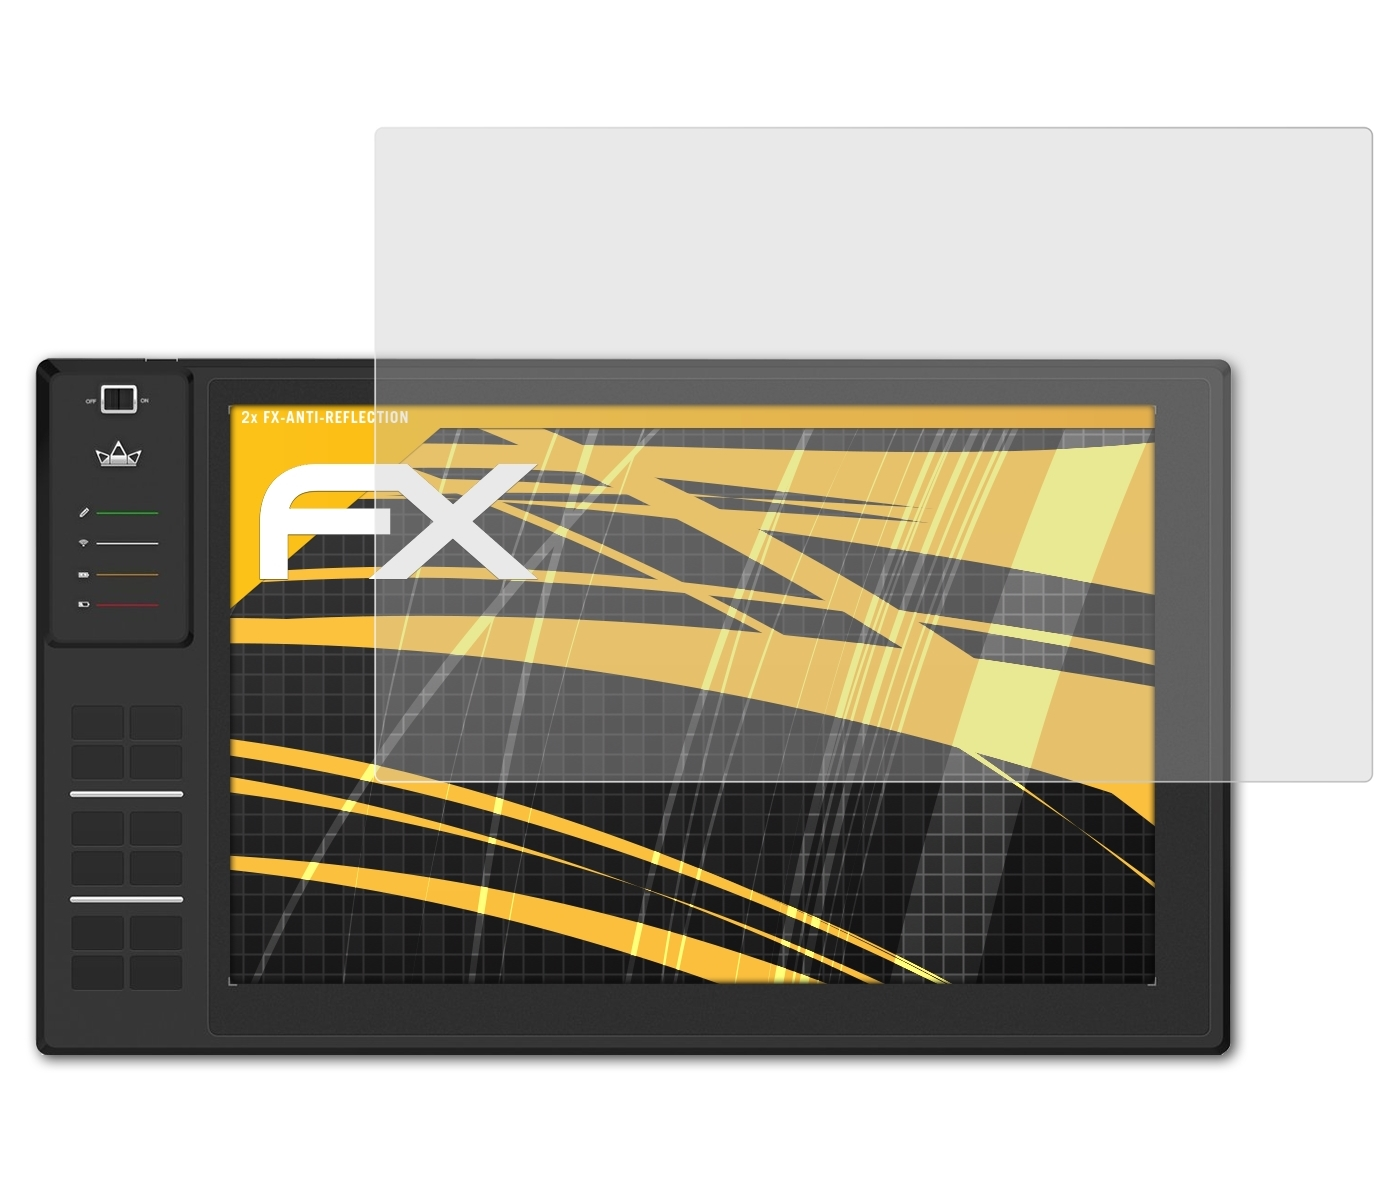 ATFOLIX 2x FX-Antireflex Displayschutz(für Huion WH1409)